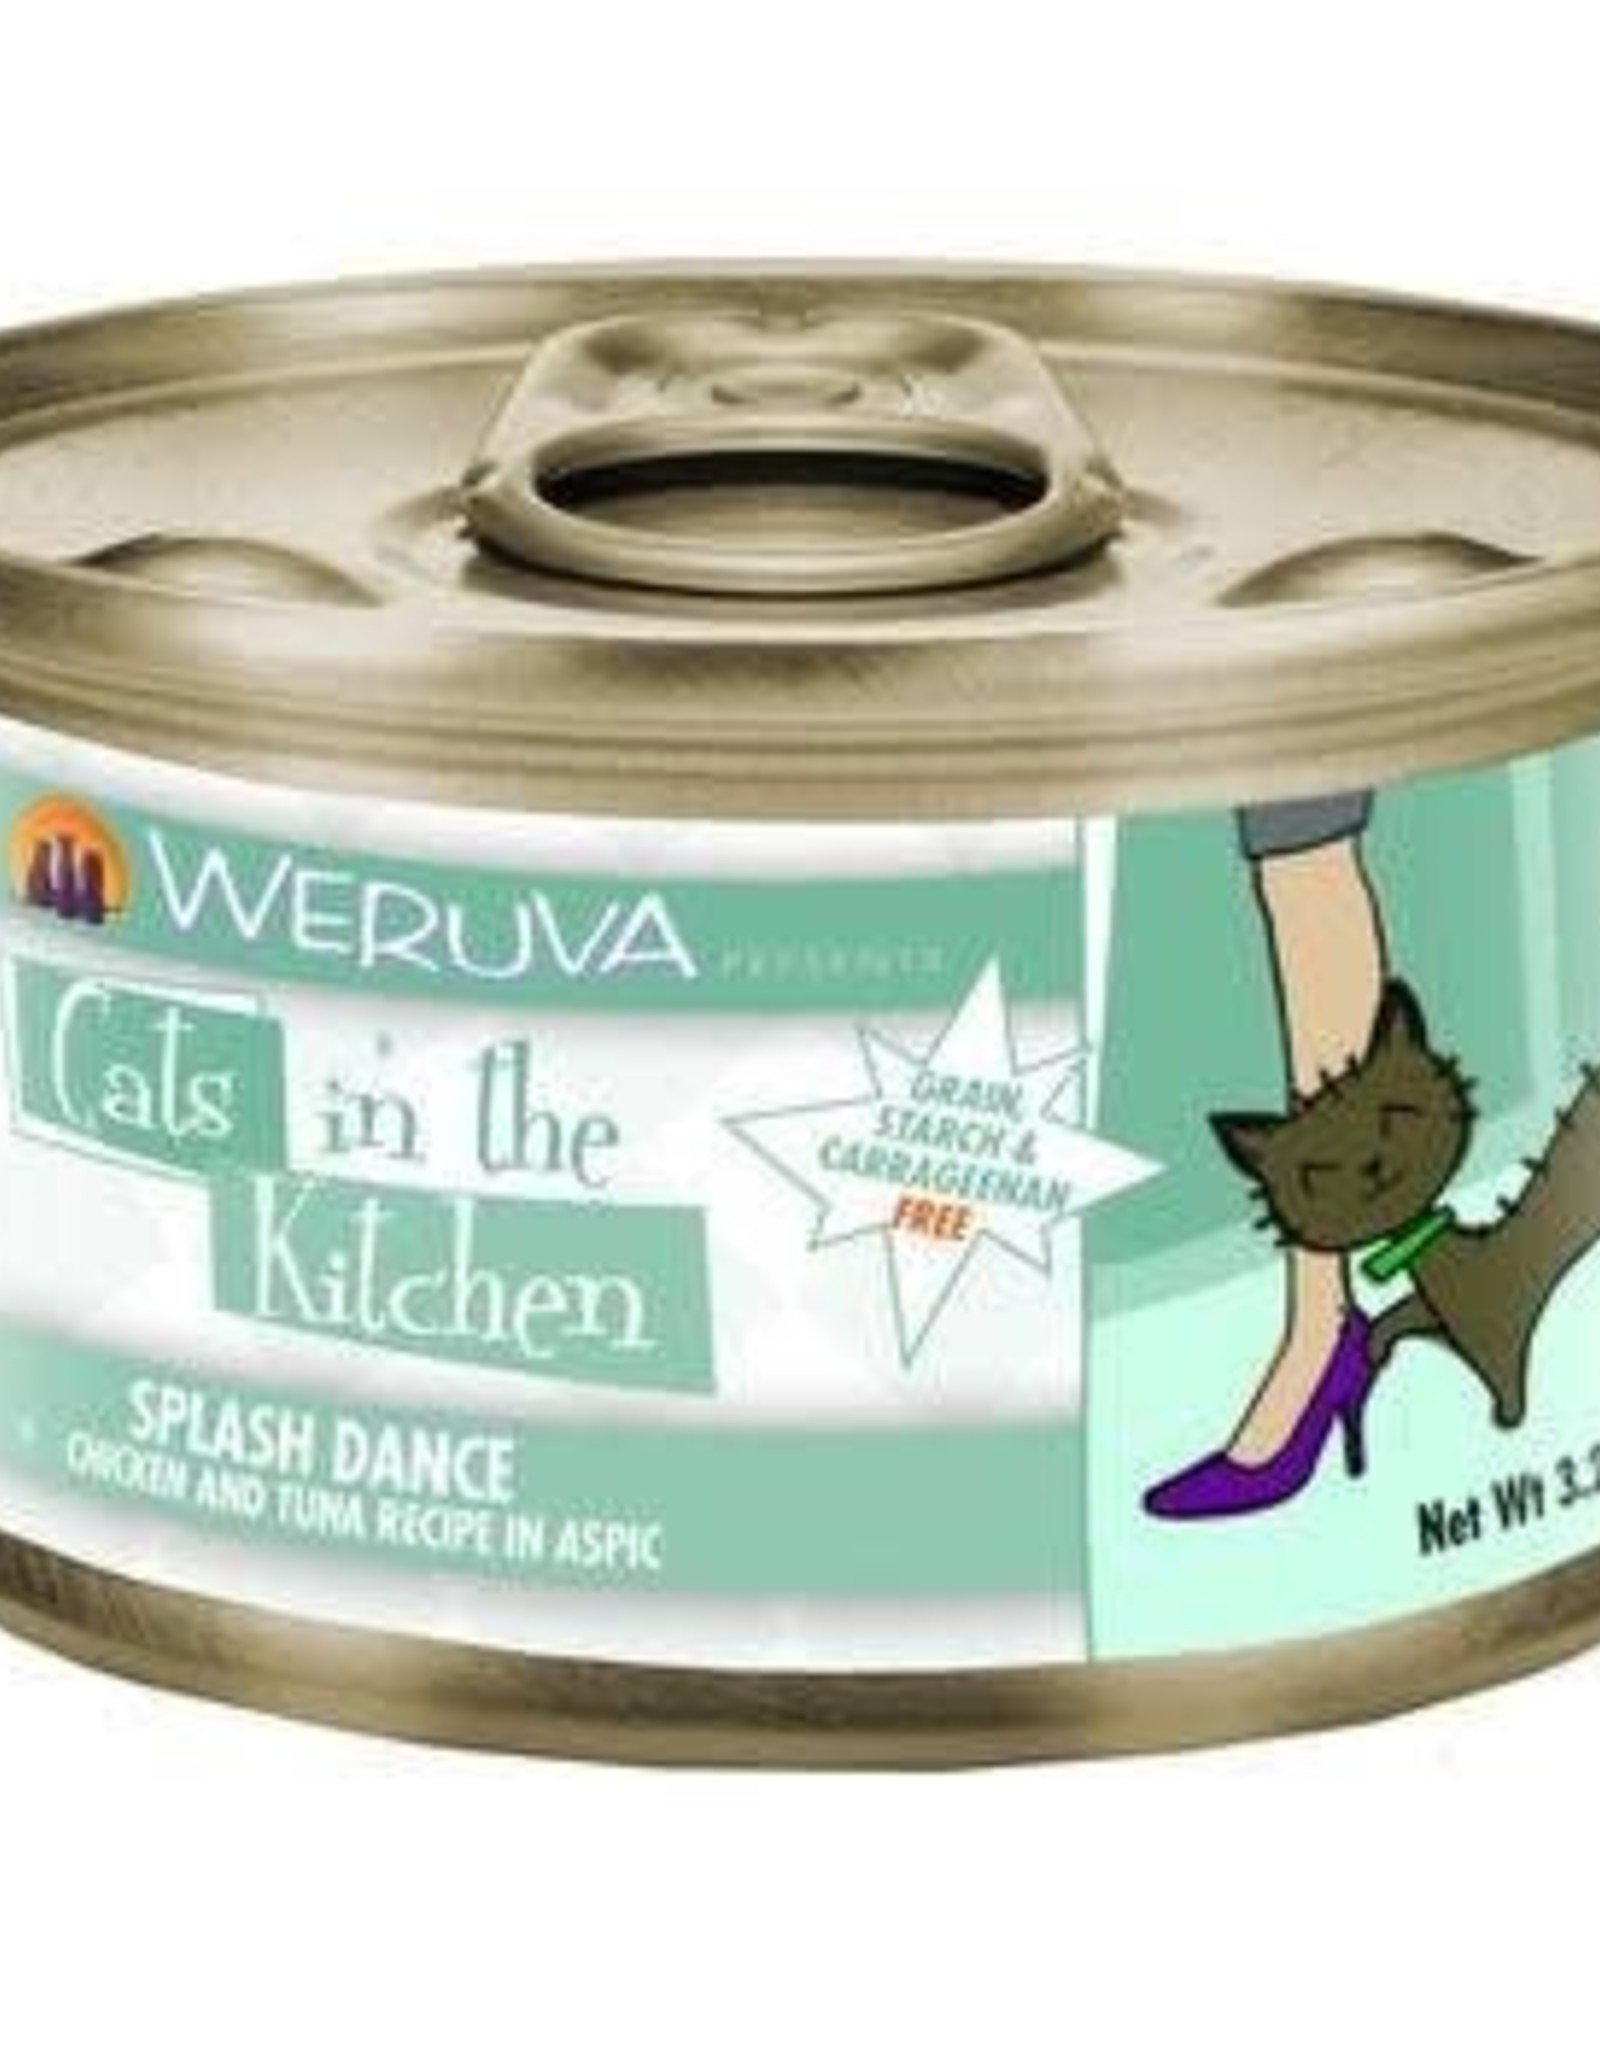 Weruva Weruva Cats in the Kitchen Splash Dance with Chicken Ocean Fish  Wet Cat food 3.2 oz